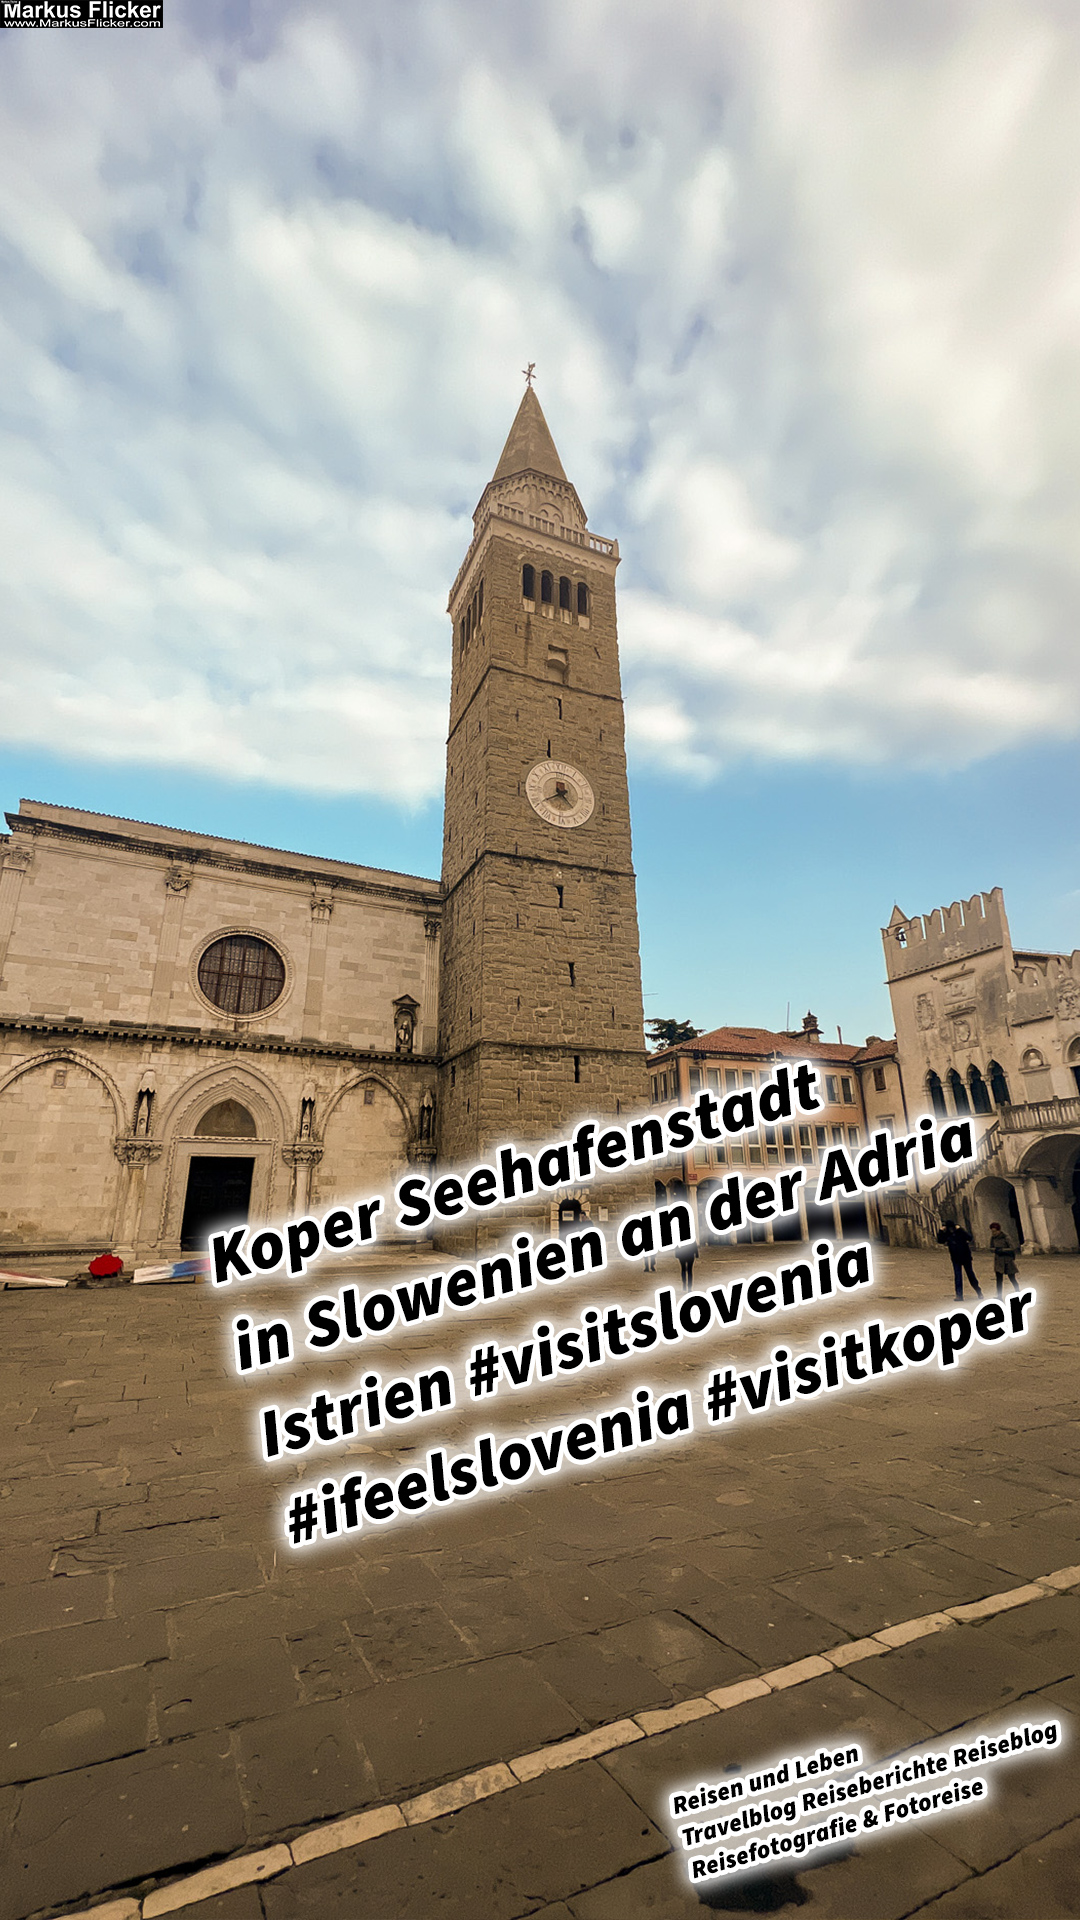 Koper Seehafenstadt in Slowenien an der Adria Istrien #visitslovenia #ifeelslovenia #visitkoper